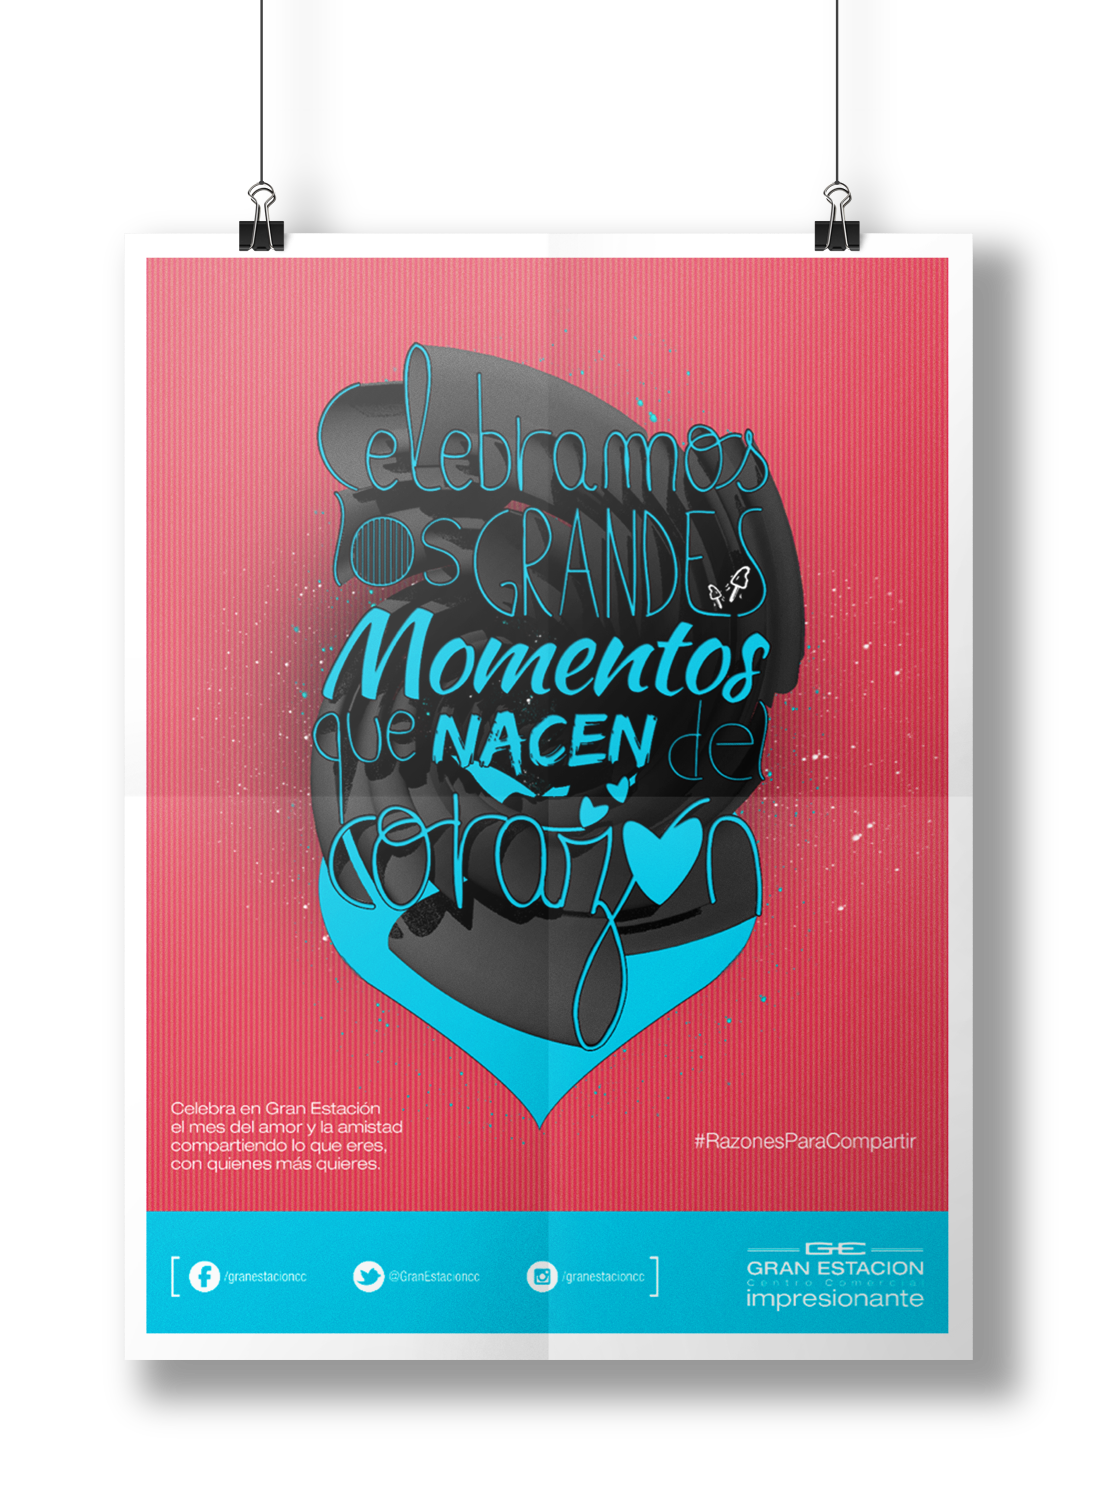 Reasons to Share compartir gran estación centros comerciales Amor y Amistad Tarjetas Mensajes Positivos campaña publicitaria pink icons mall valentines day advertisement Logo Design cards